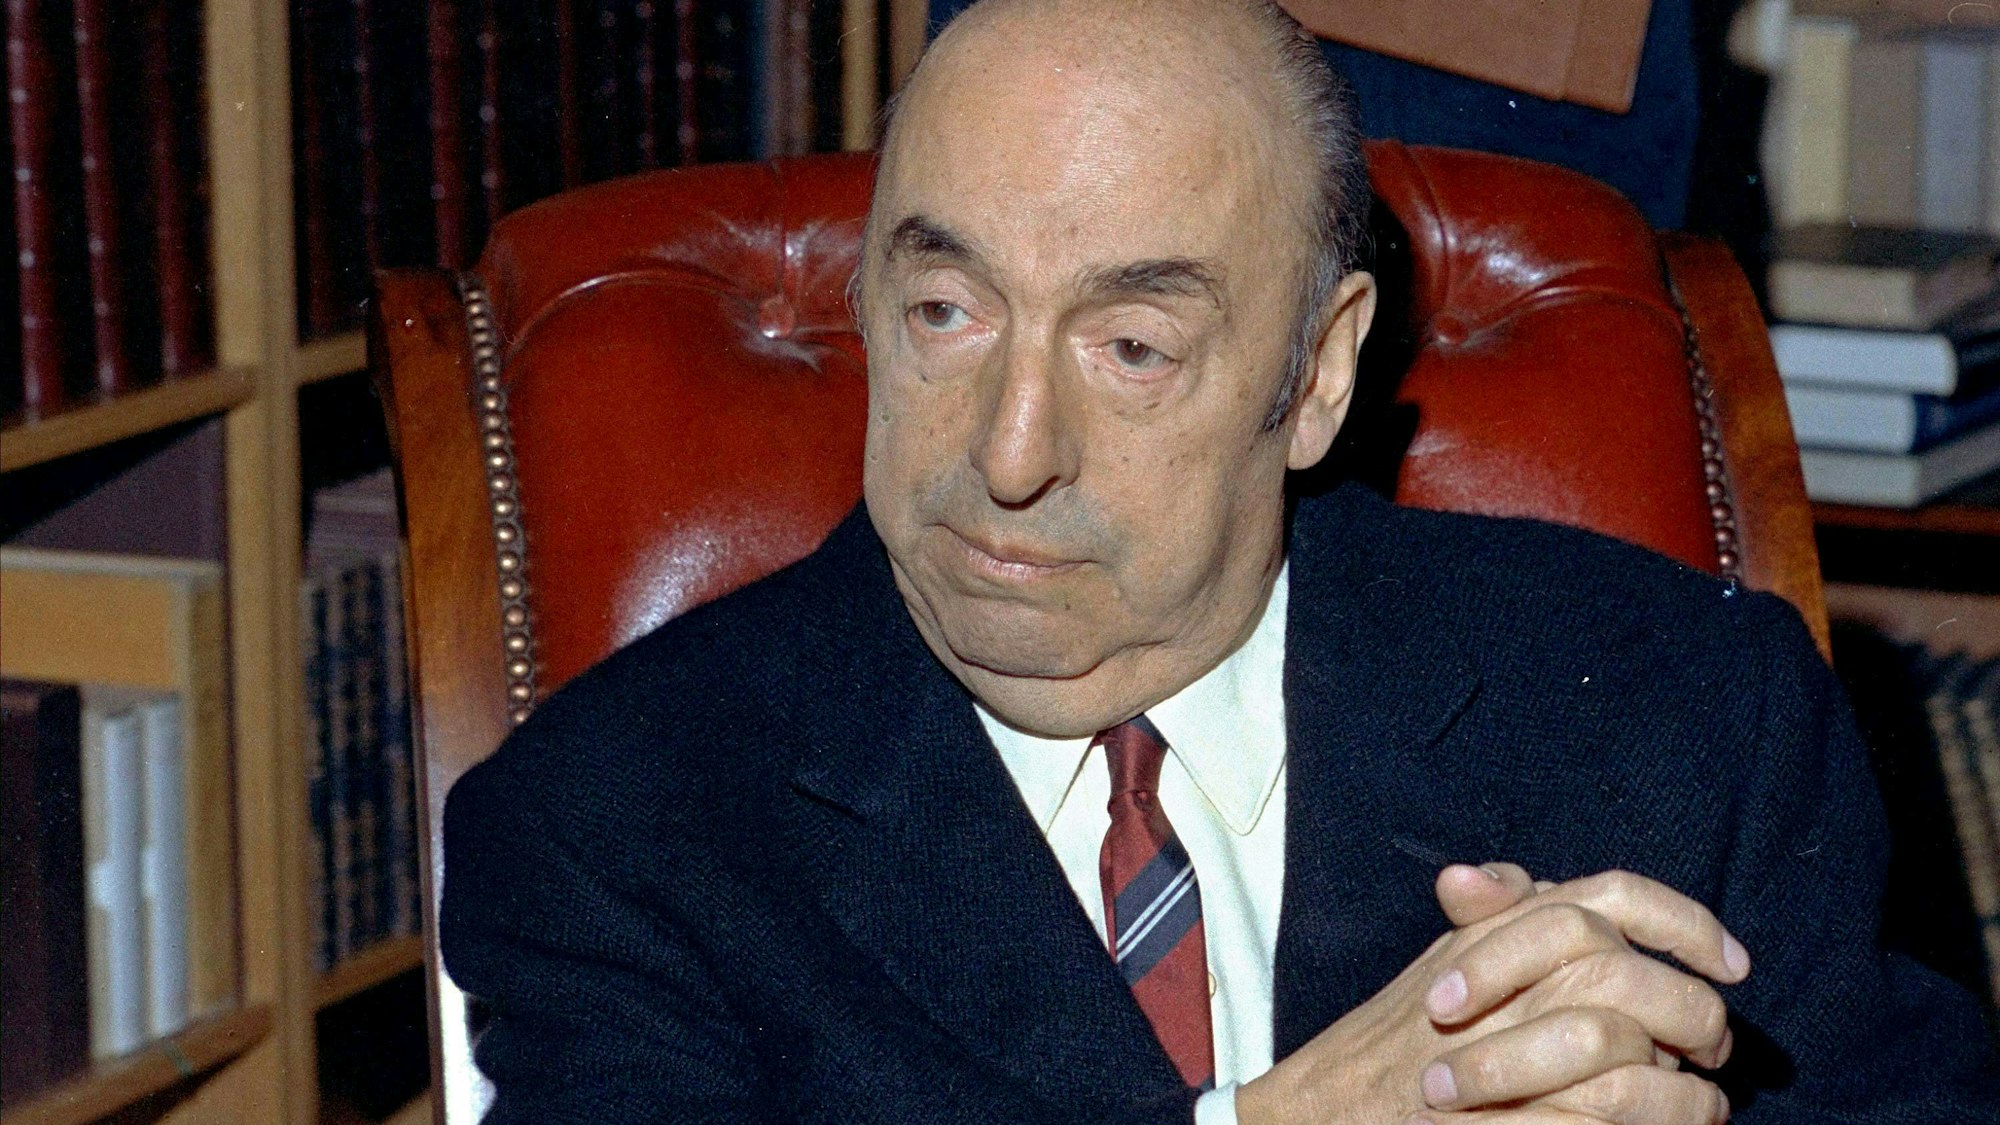 Nobelpreisträger und Dissident Pablo Neruda in einer Aufnahme von 1971.